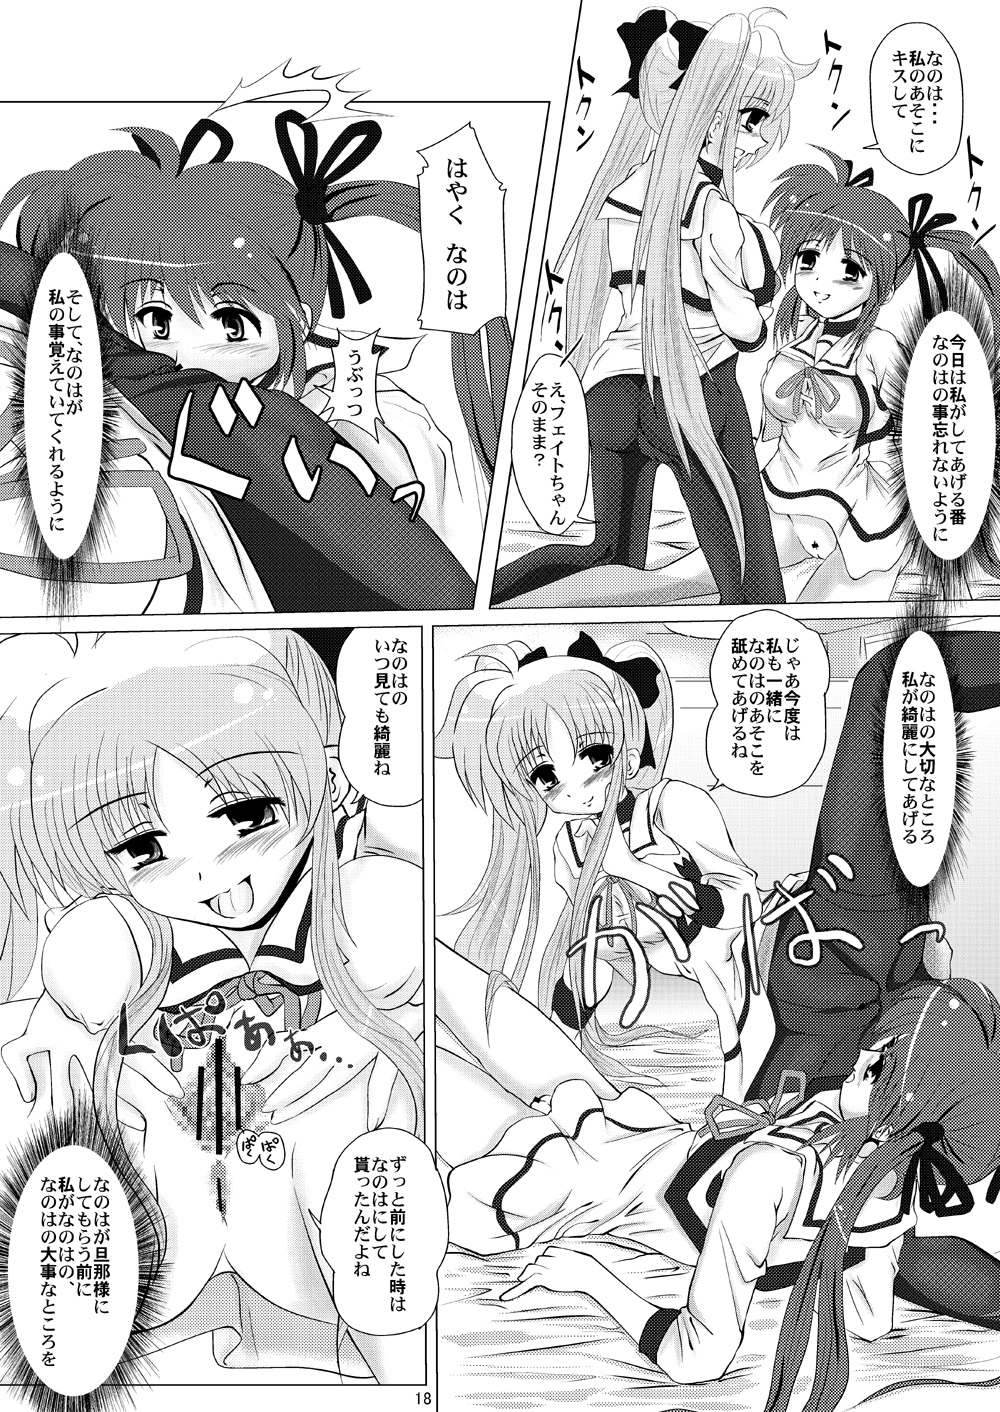 (SC35) [MajesticRune (Kurogane)] Kirameku Tsubasa ni Omoi wo Hasete Todoku to Iina, Watashi no Yuuki (Magical Girl Lyrical Nanoha) page 17 full